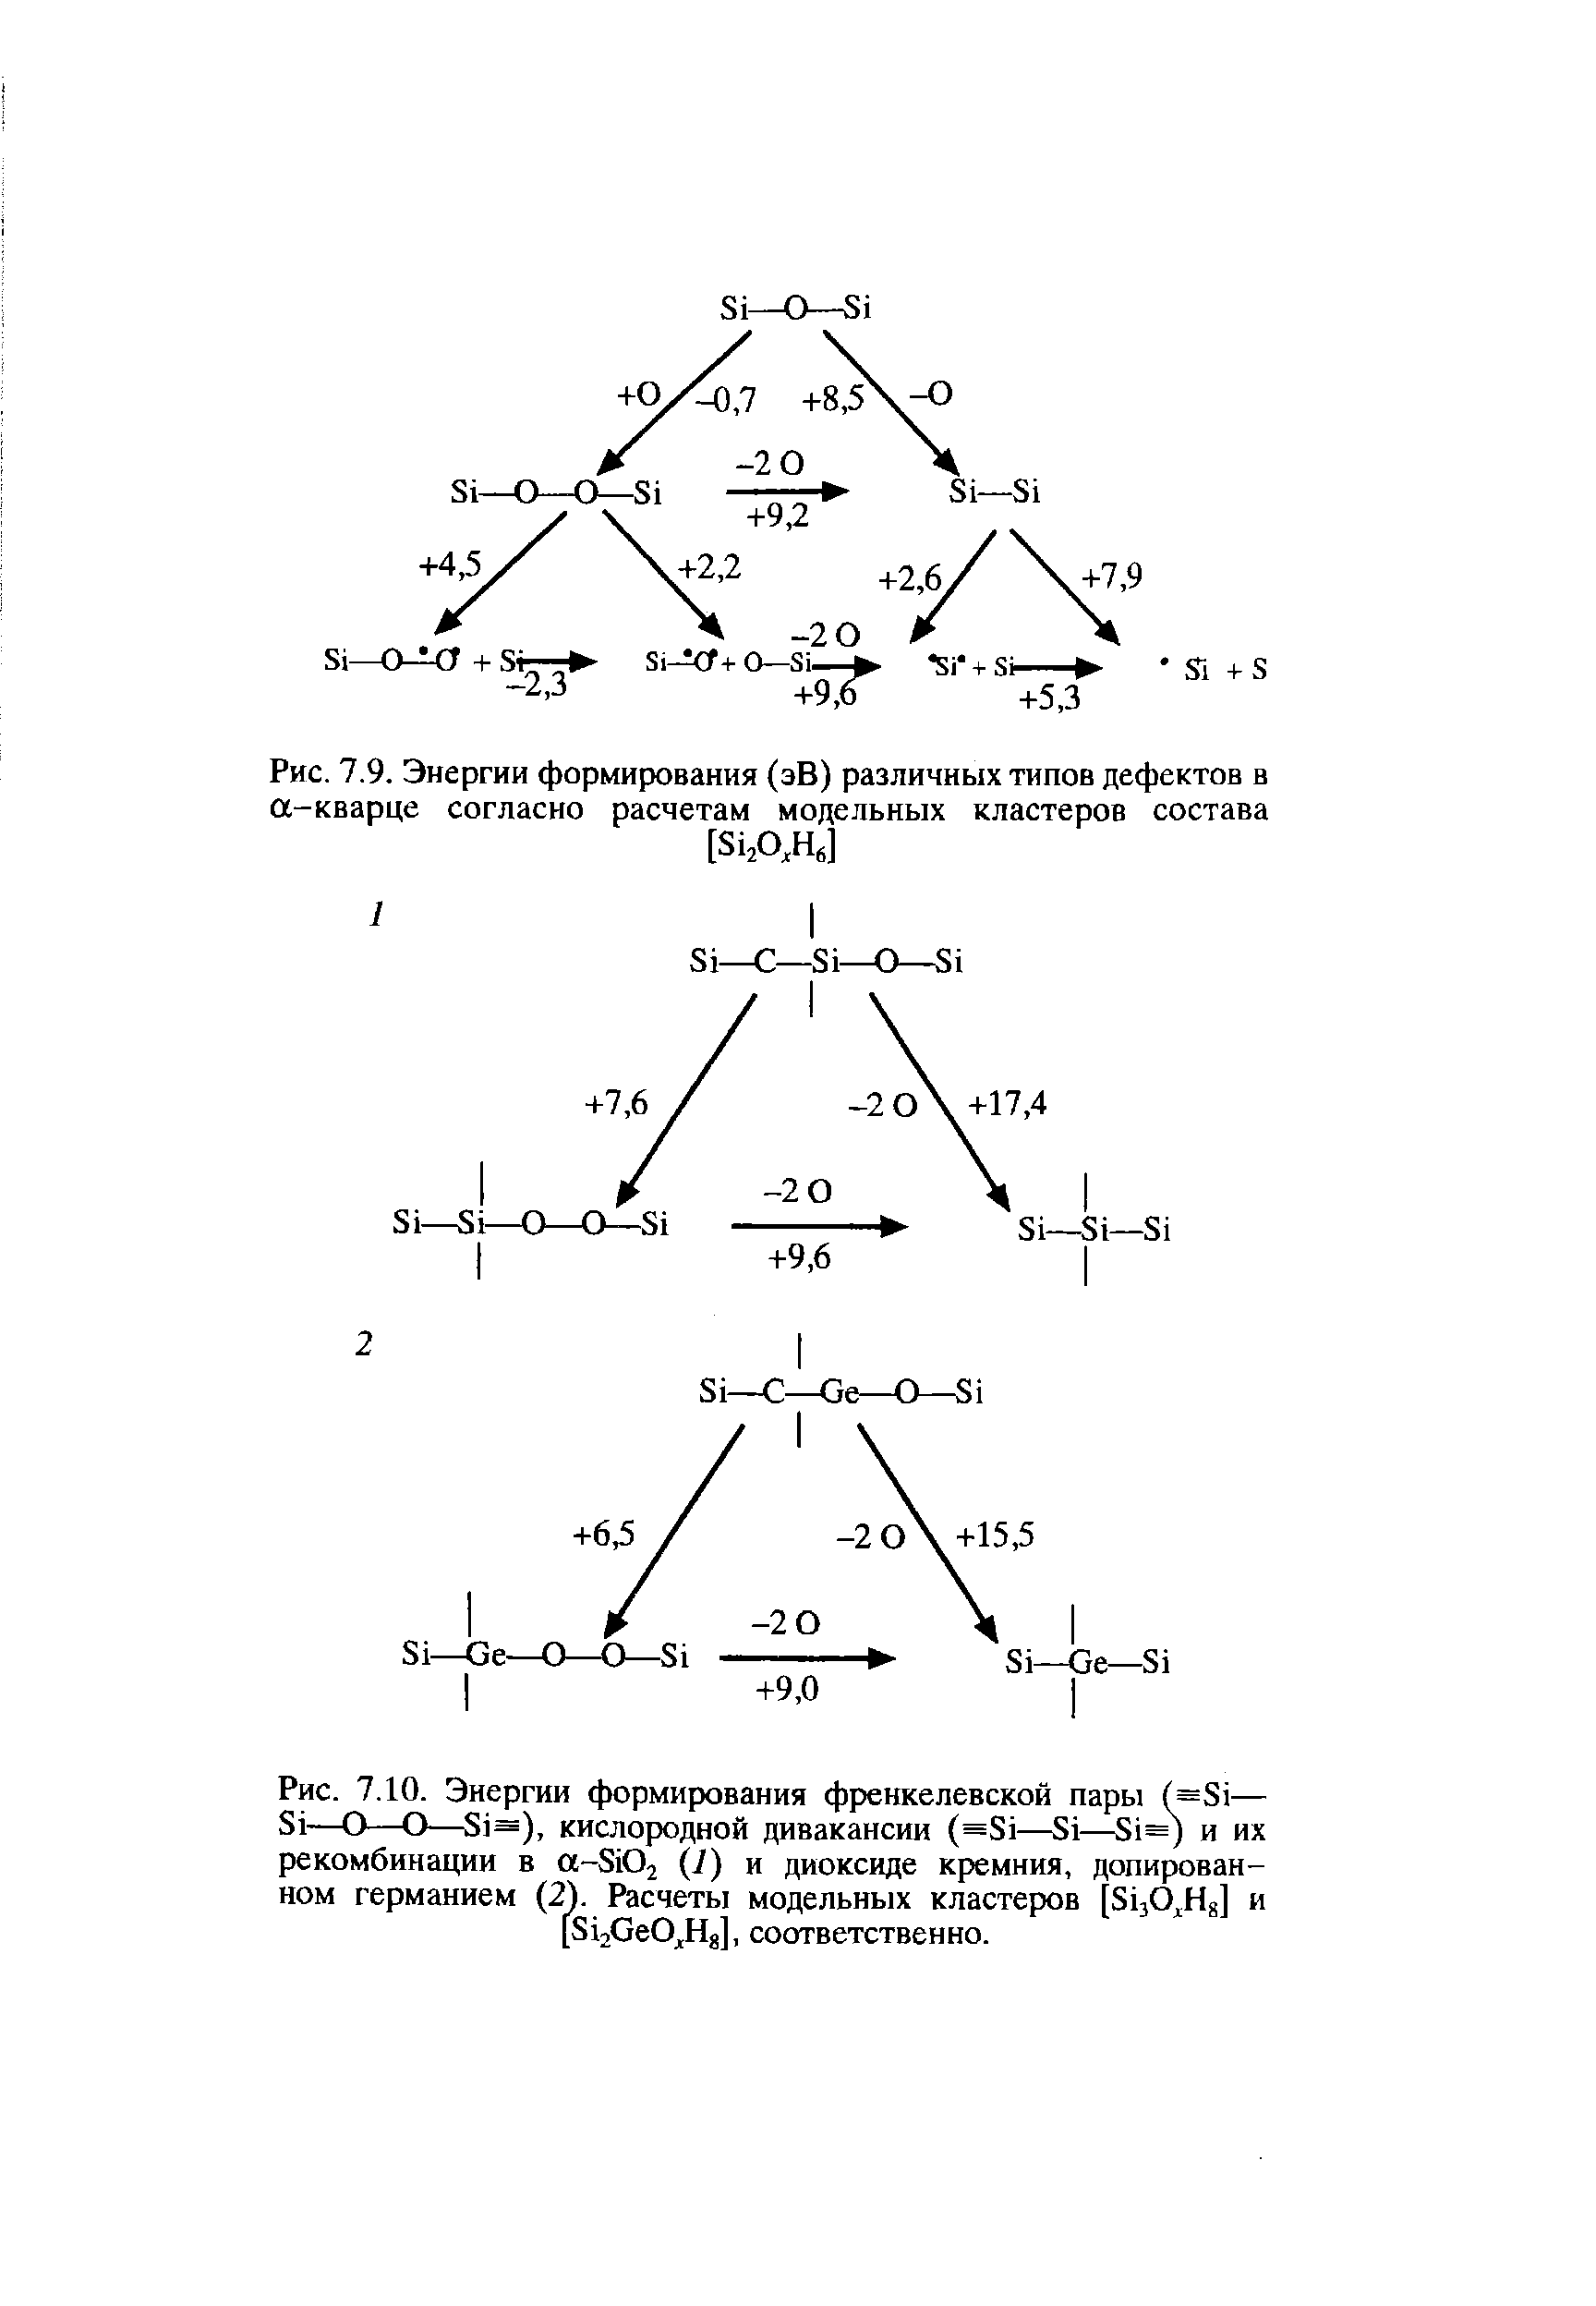 Рис. 7.10. Энергии формирования френкелевской пары (=81— 81—О—О—81=), кислородной дивакансии (=81—81— 1=) и их рекомбинации в а-8102 (1) и диоксиде кремния, допирован-ном германием (2). Расчеты модельных кластеров [ЗцО На] и [8120е0А]1 соответственно.
